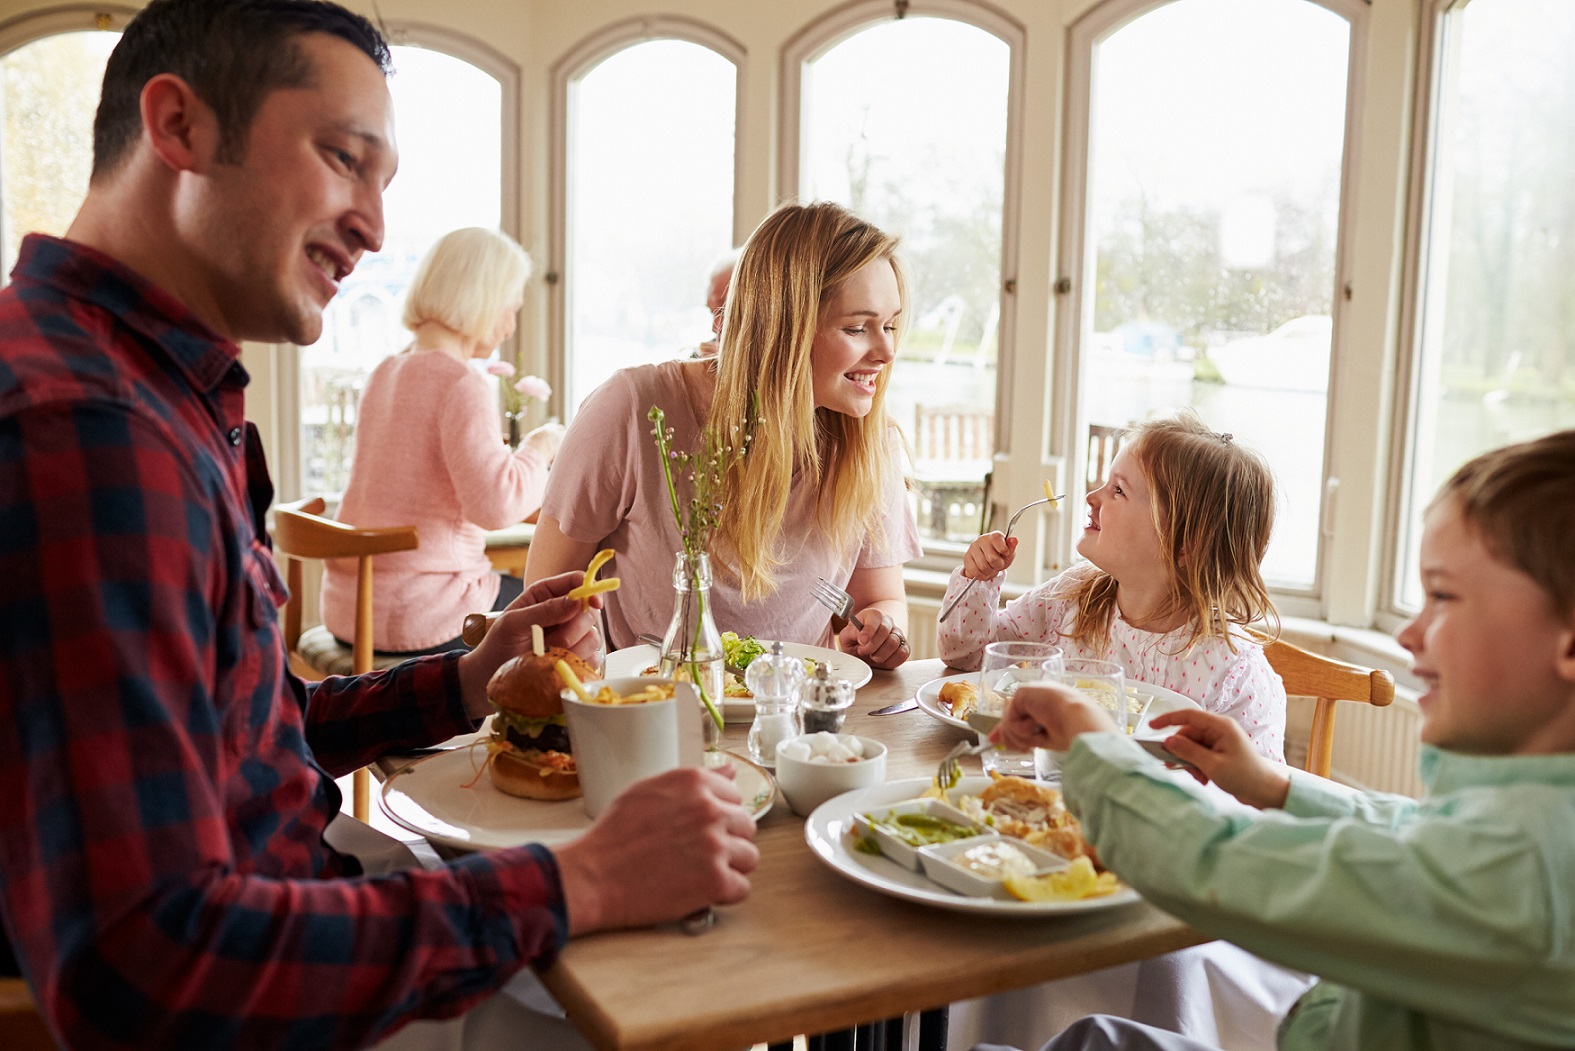 Wskazówki dotyczące prowadzenia restauracji, kawiarni lub zakładu gastronomicznego przyjaznego rodzinie